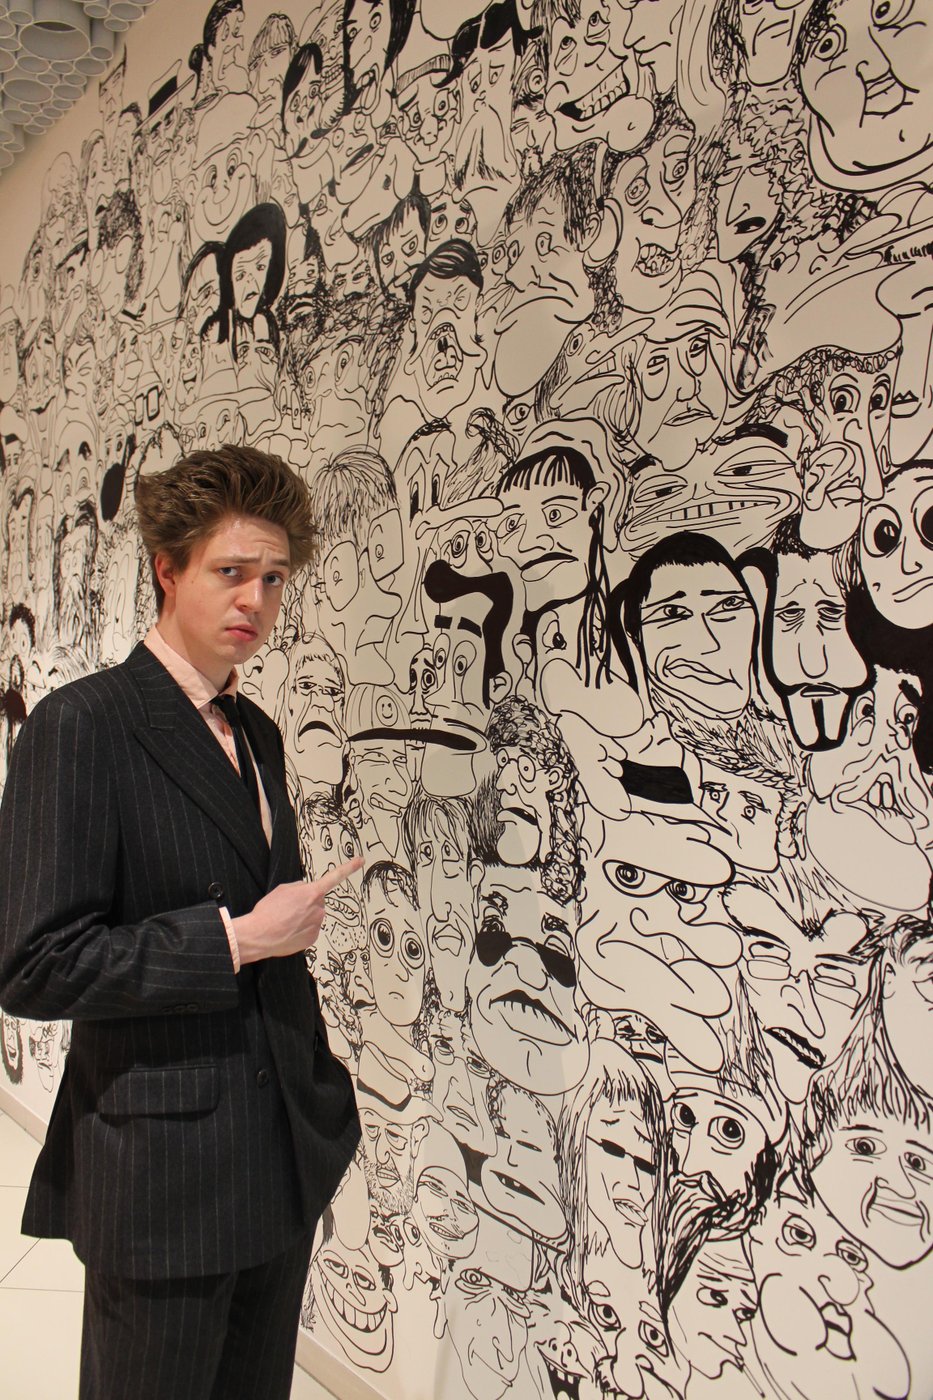 Artist Fabian Köttl in front of his artwork